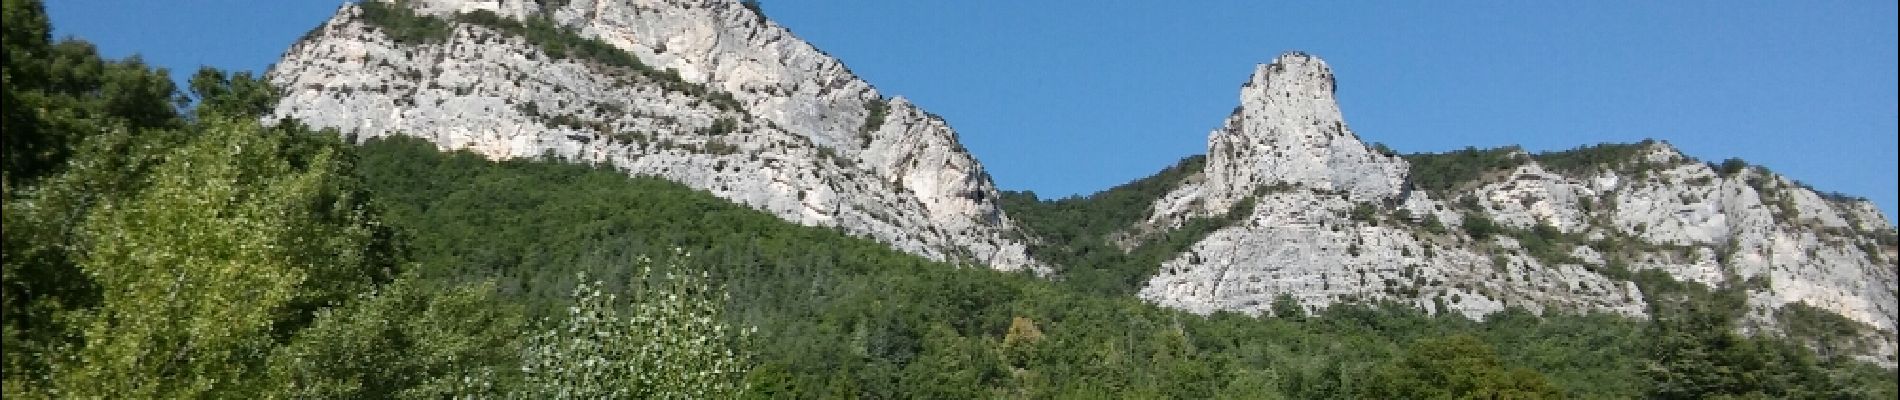 Randonnée Marche Saou - Roche colombe pas de lechelette - Photo